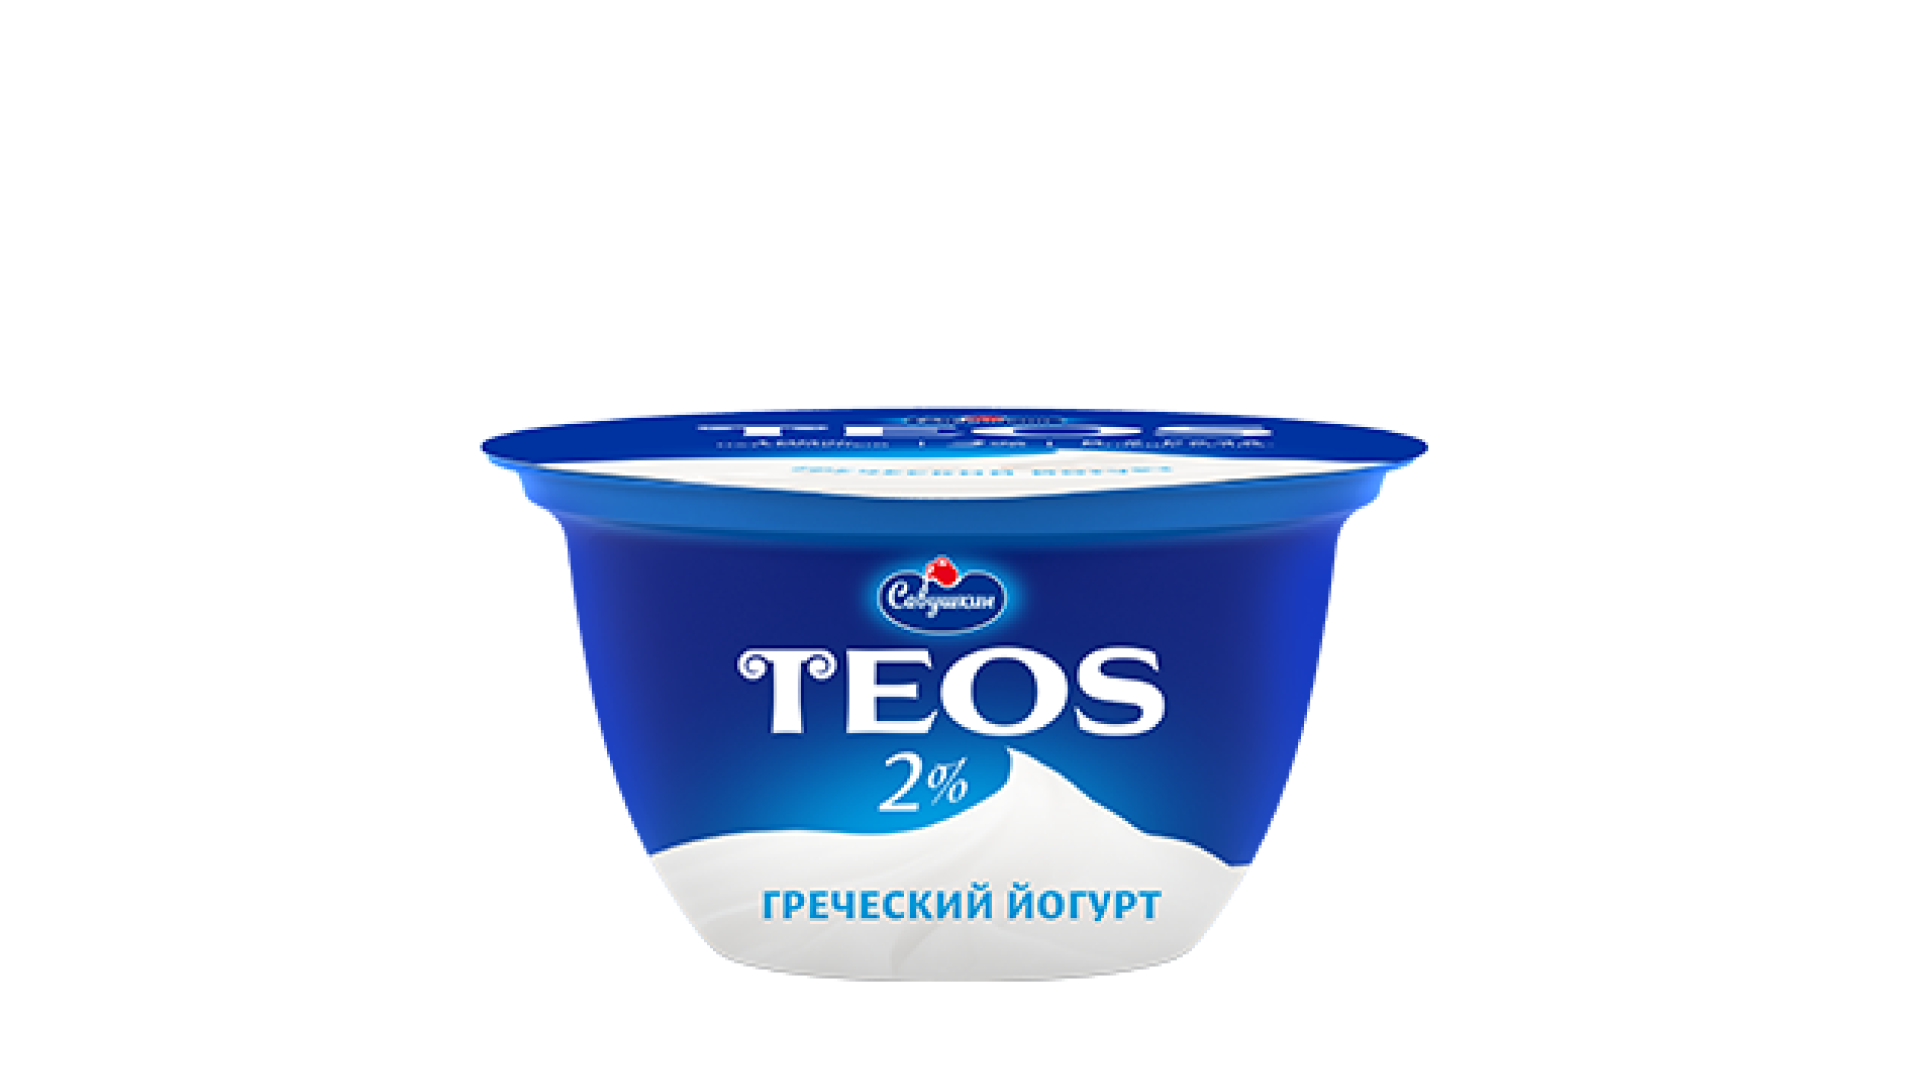 Йогурт греческий Teos 2% 140г.. Йогурт греческий Теос 140 грамм. Йогурт Теос греческий натуральный. Йогурт греческий Савушкин продукт. Теос питьевой